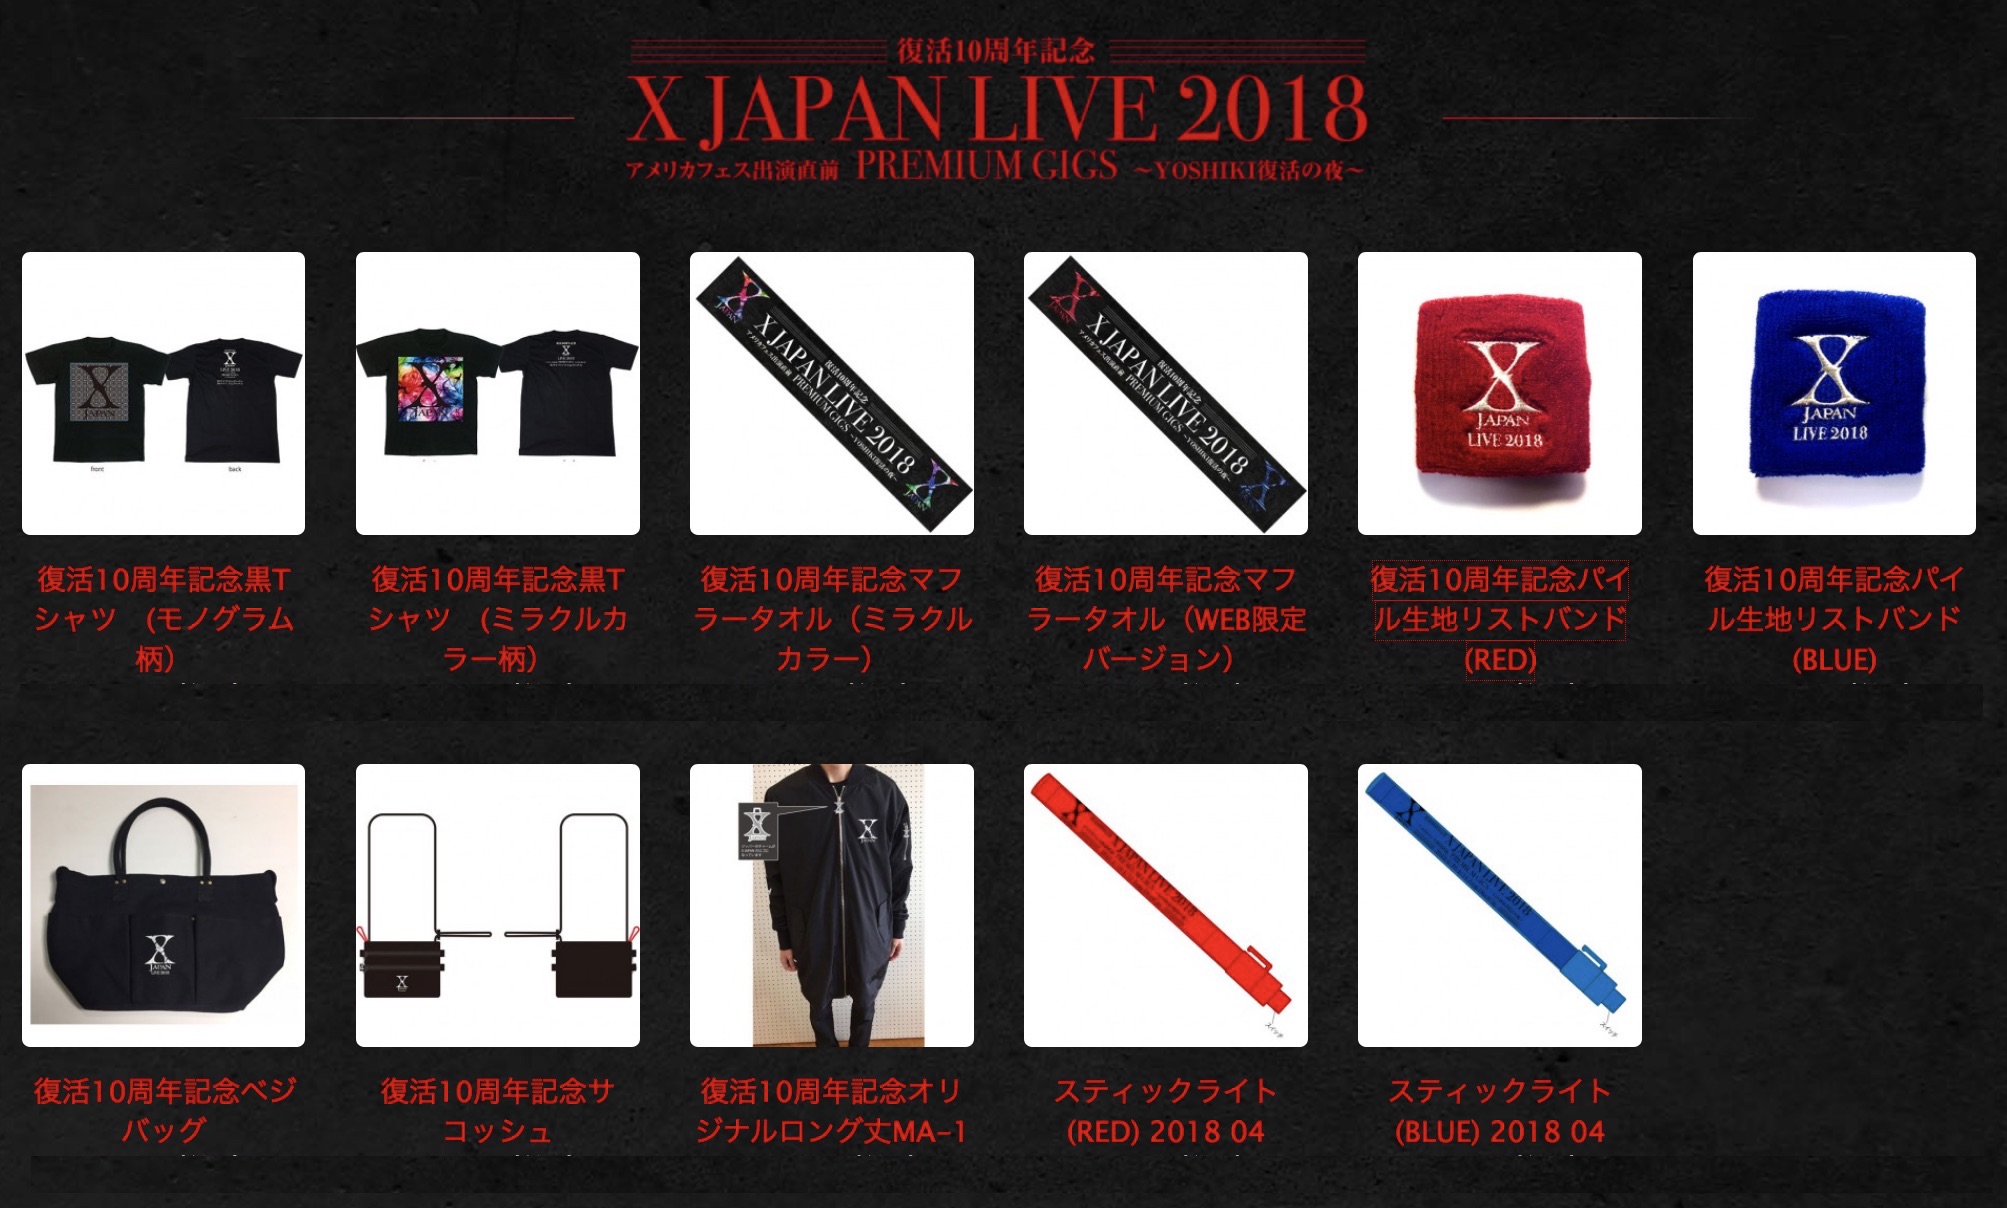 復活１０周年記念 X Japan Live 18 アメリカフェス出演直前premium Gigs Yoshiki 復活の夜 公式グッズ販売スタート Yoshiki Pr事務局のプレスリリース